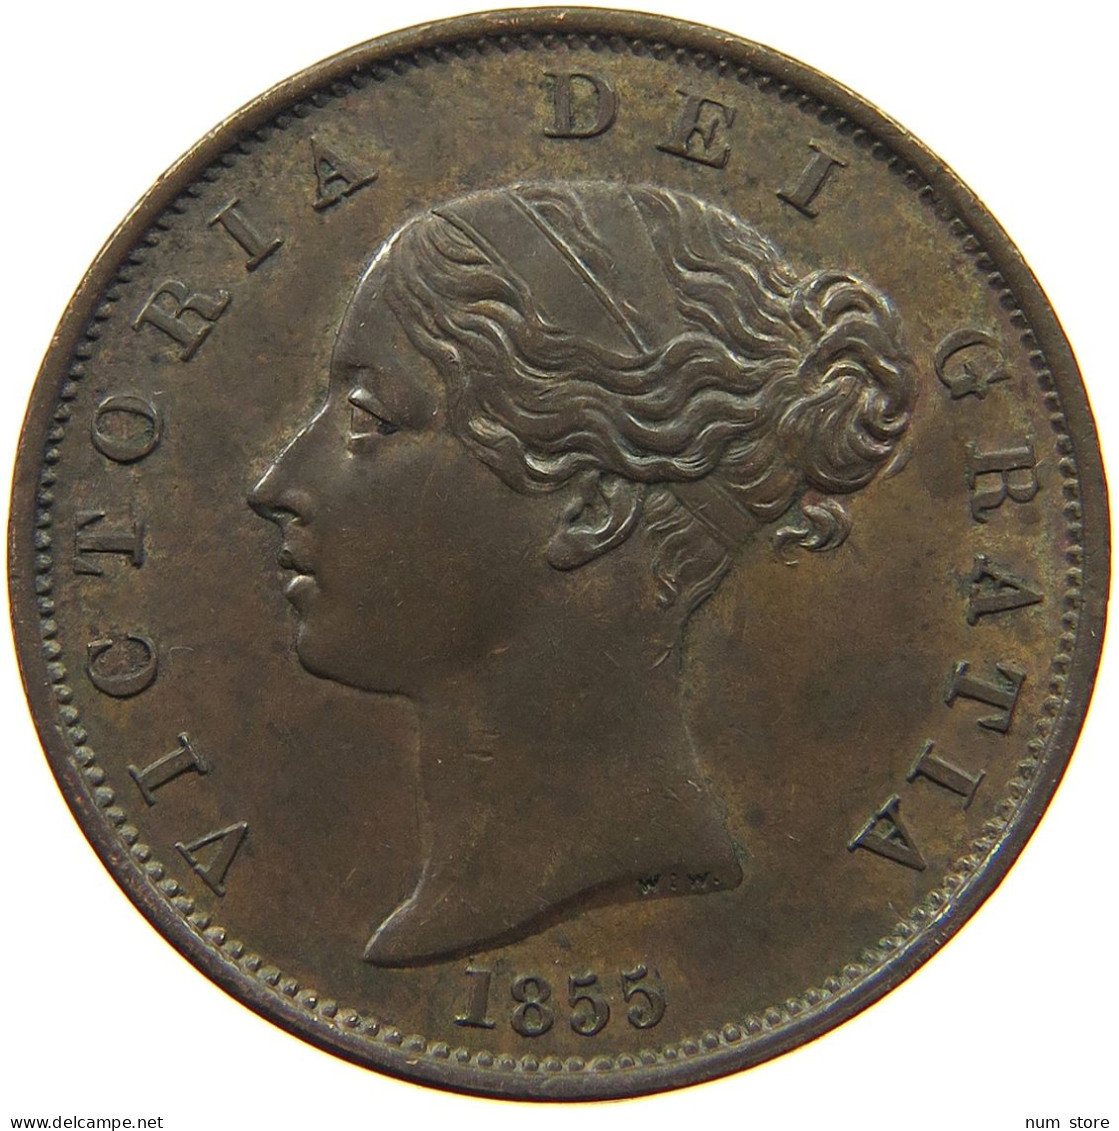 GREAT BRITAIN HALF PENNY 1855 Victoria 1837-1901 #t077 0457 - C. 1/2 Penny